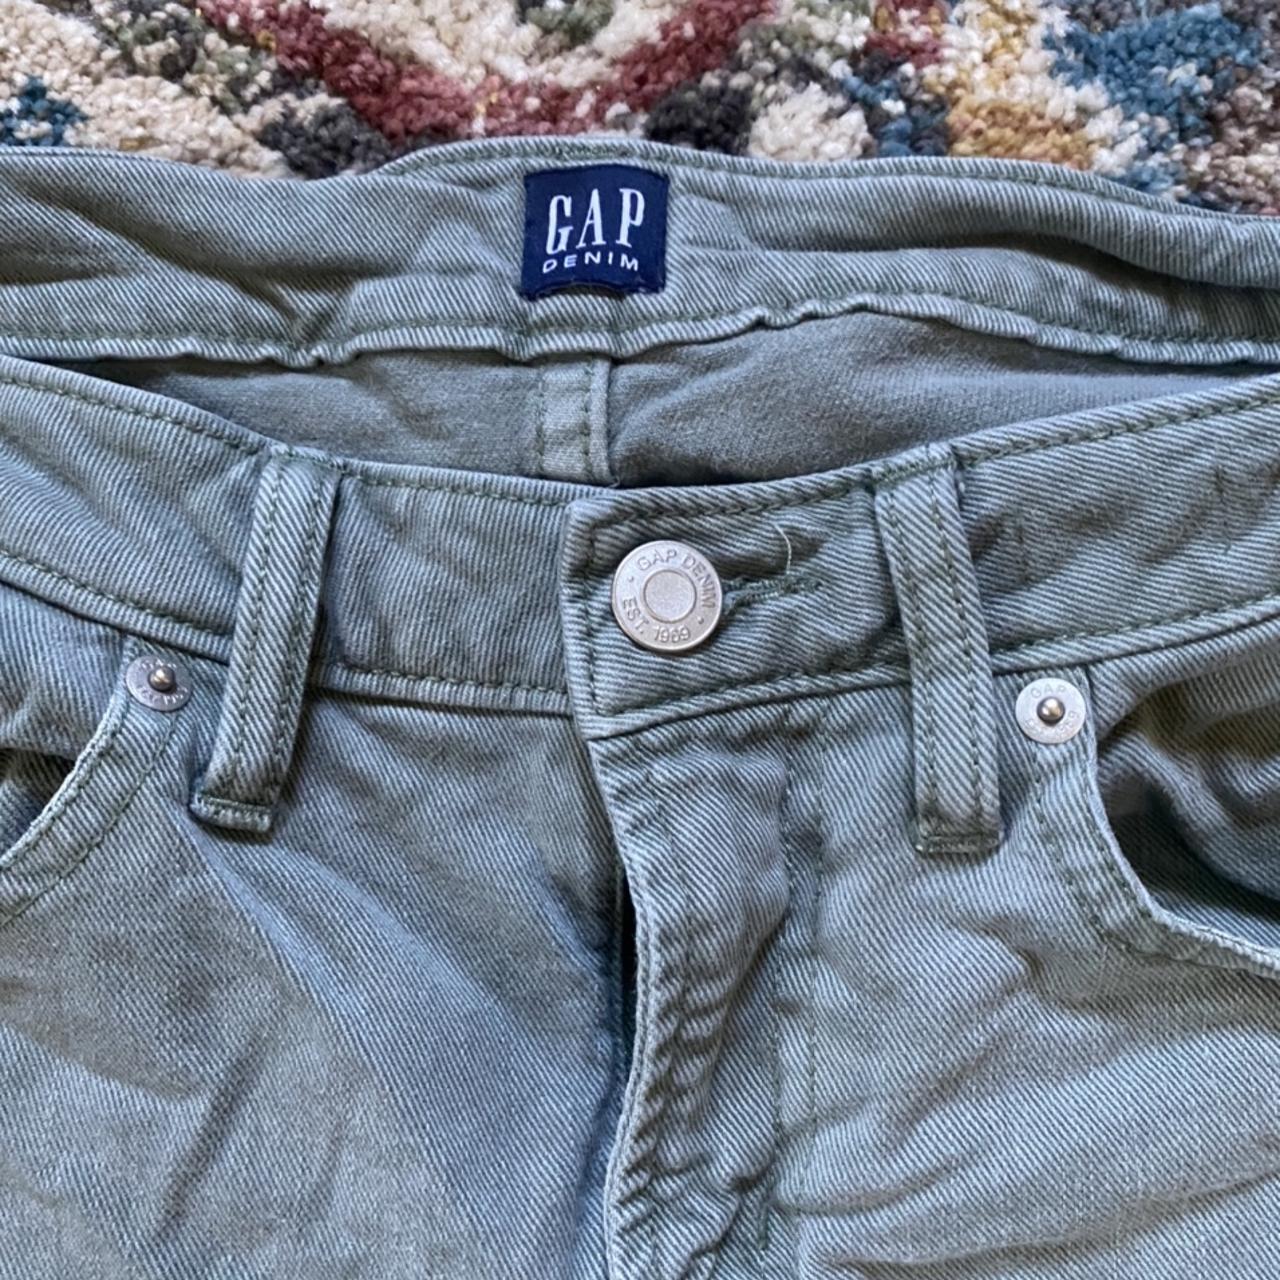 Gap Women's Green Jeans | Depop